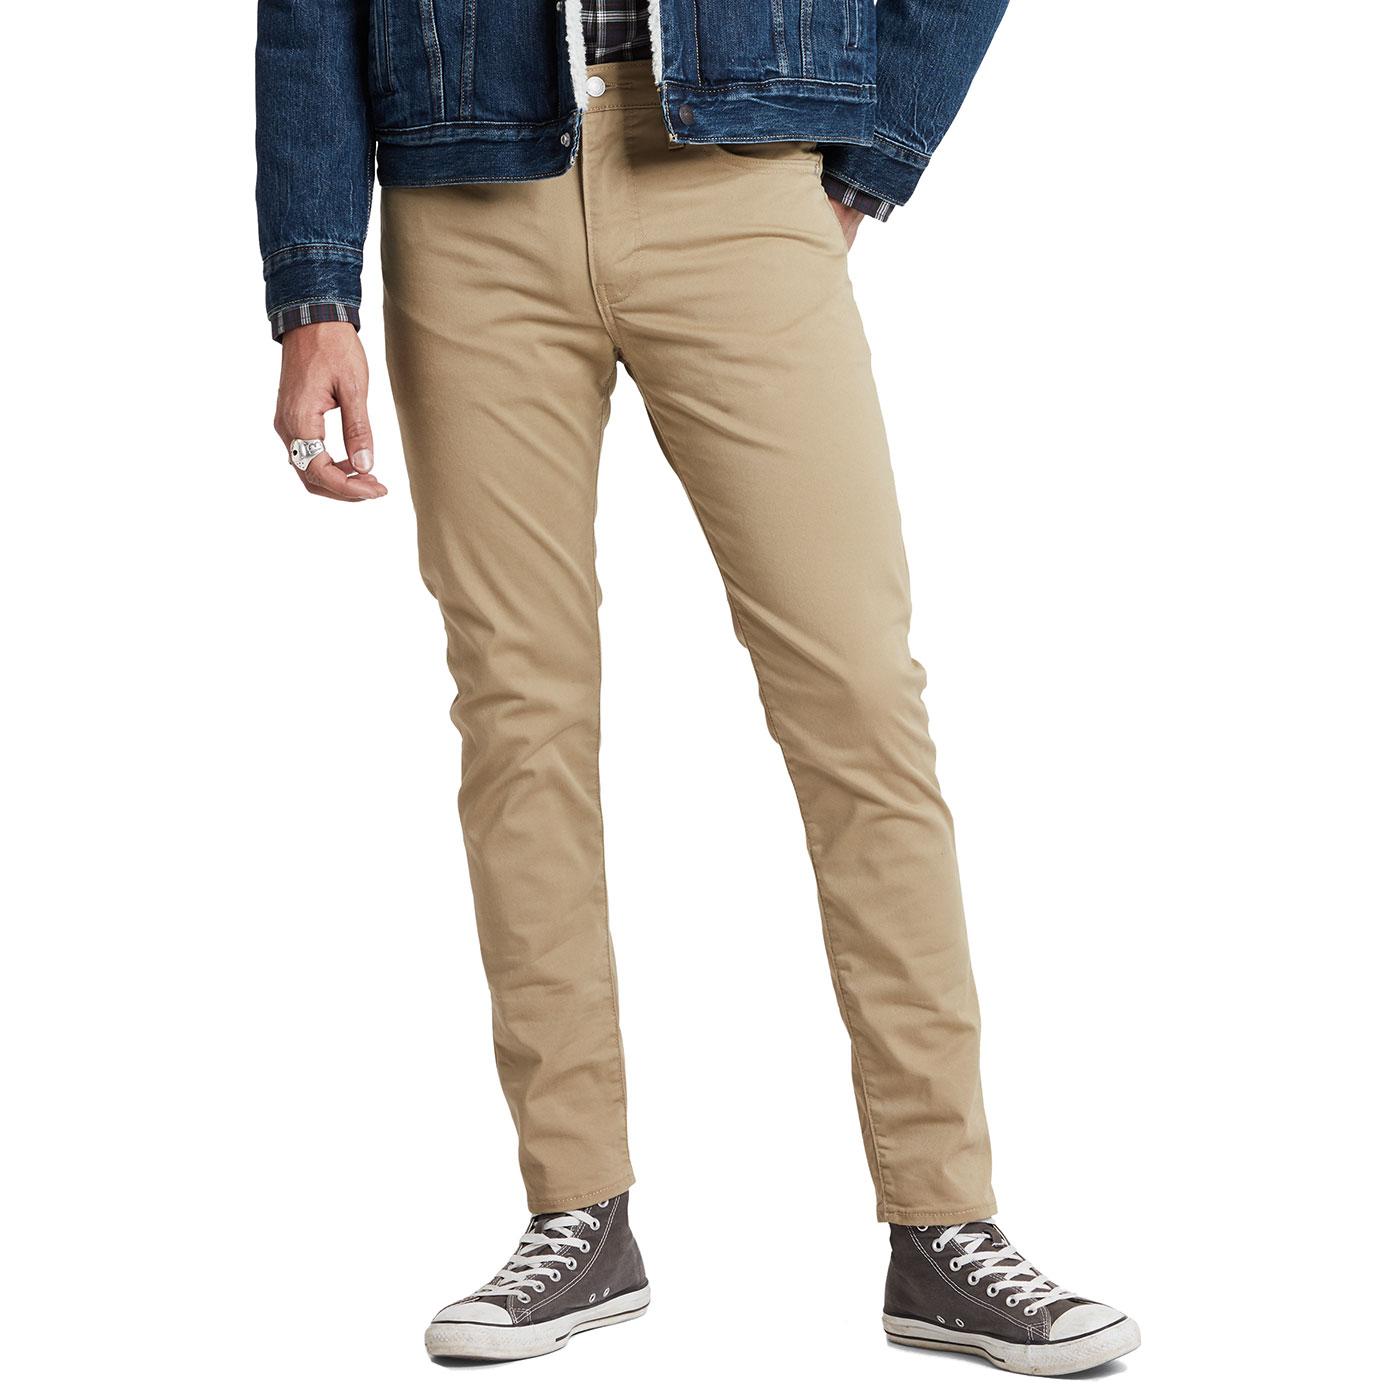 Levi's 512 Slim Taper Jeans - Harvest Gold – Cooneys Clothing & Footwear